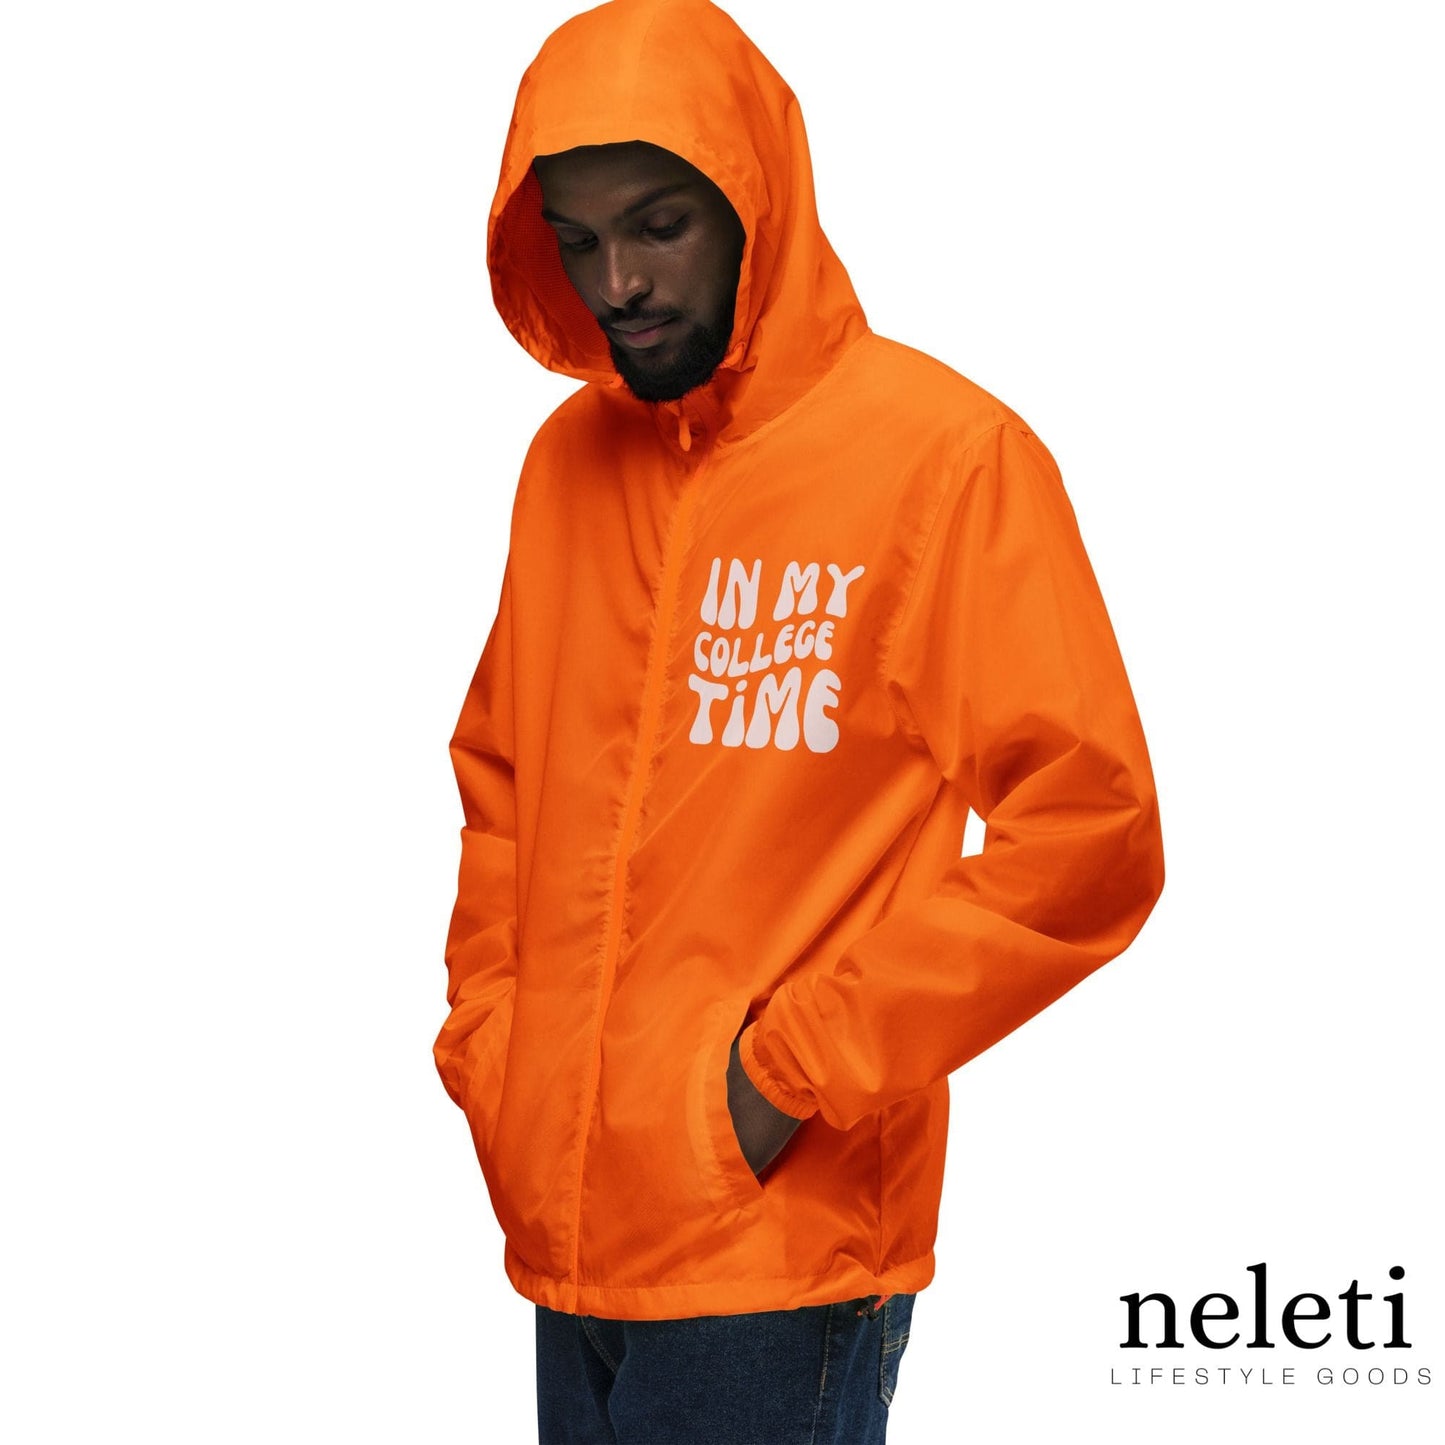 neleti.com-men-windbreaker-in-orange-color